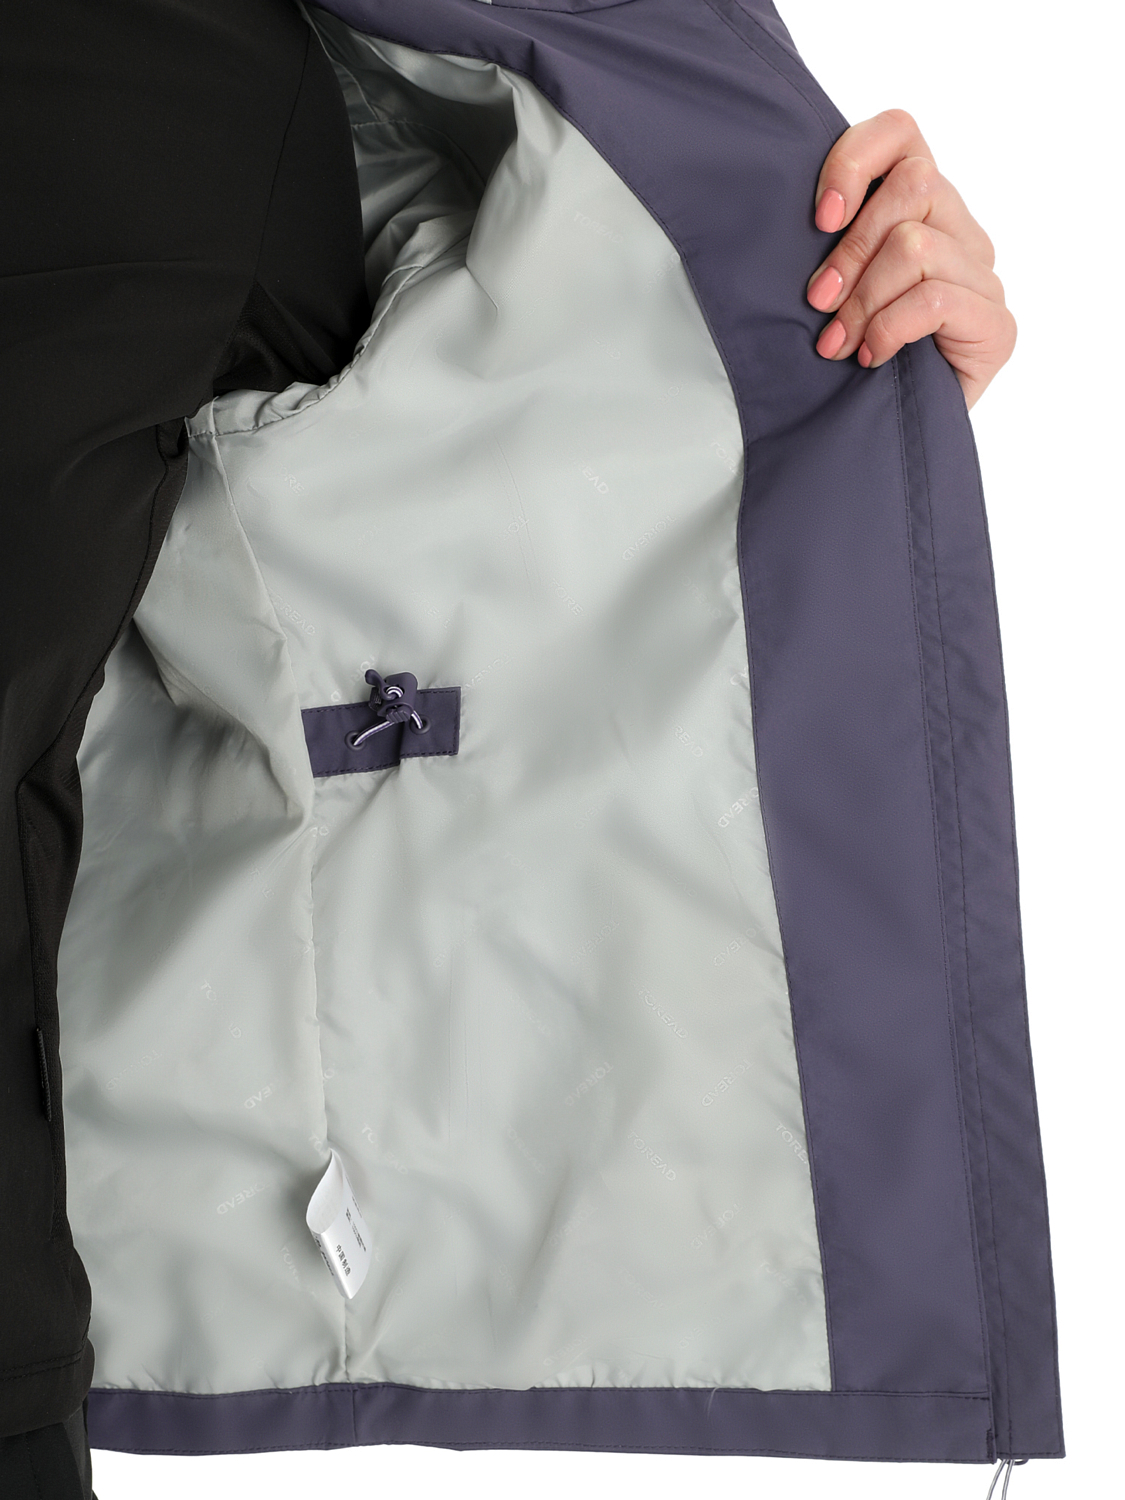 Куртка Toread Women's Jacket Lavender